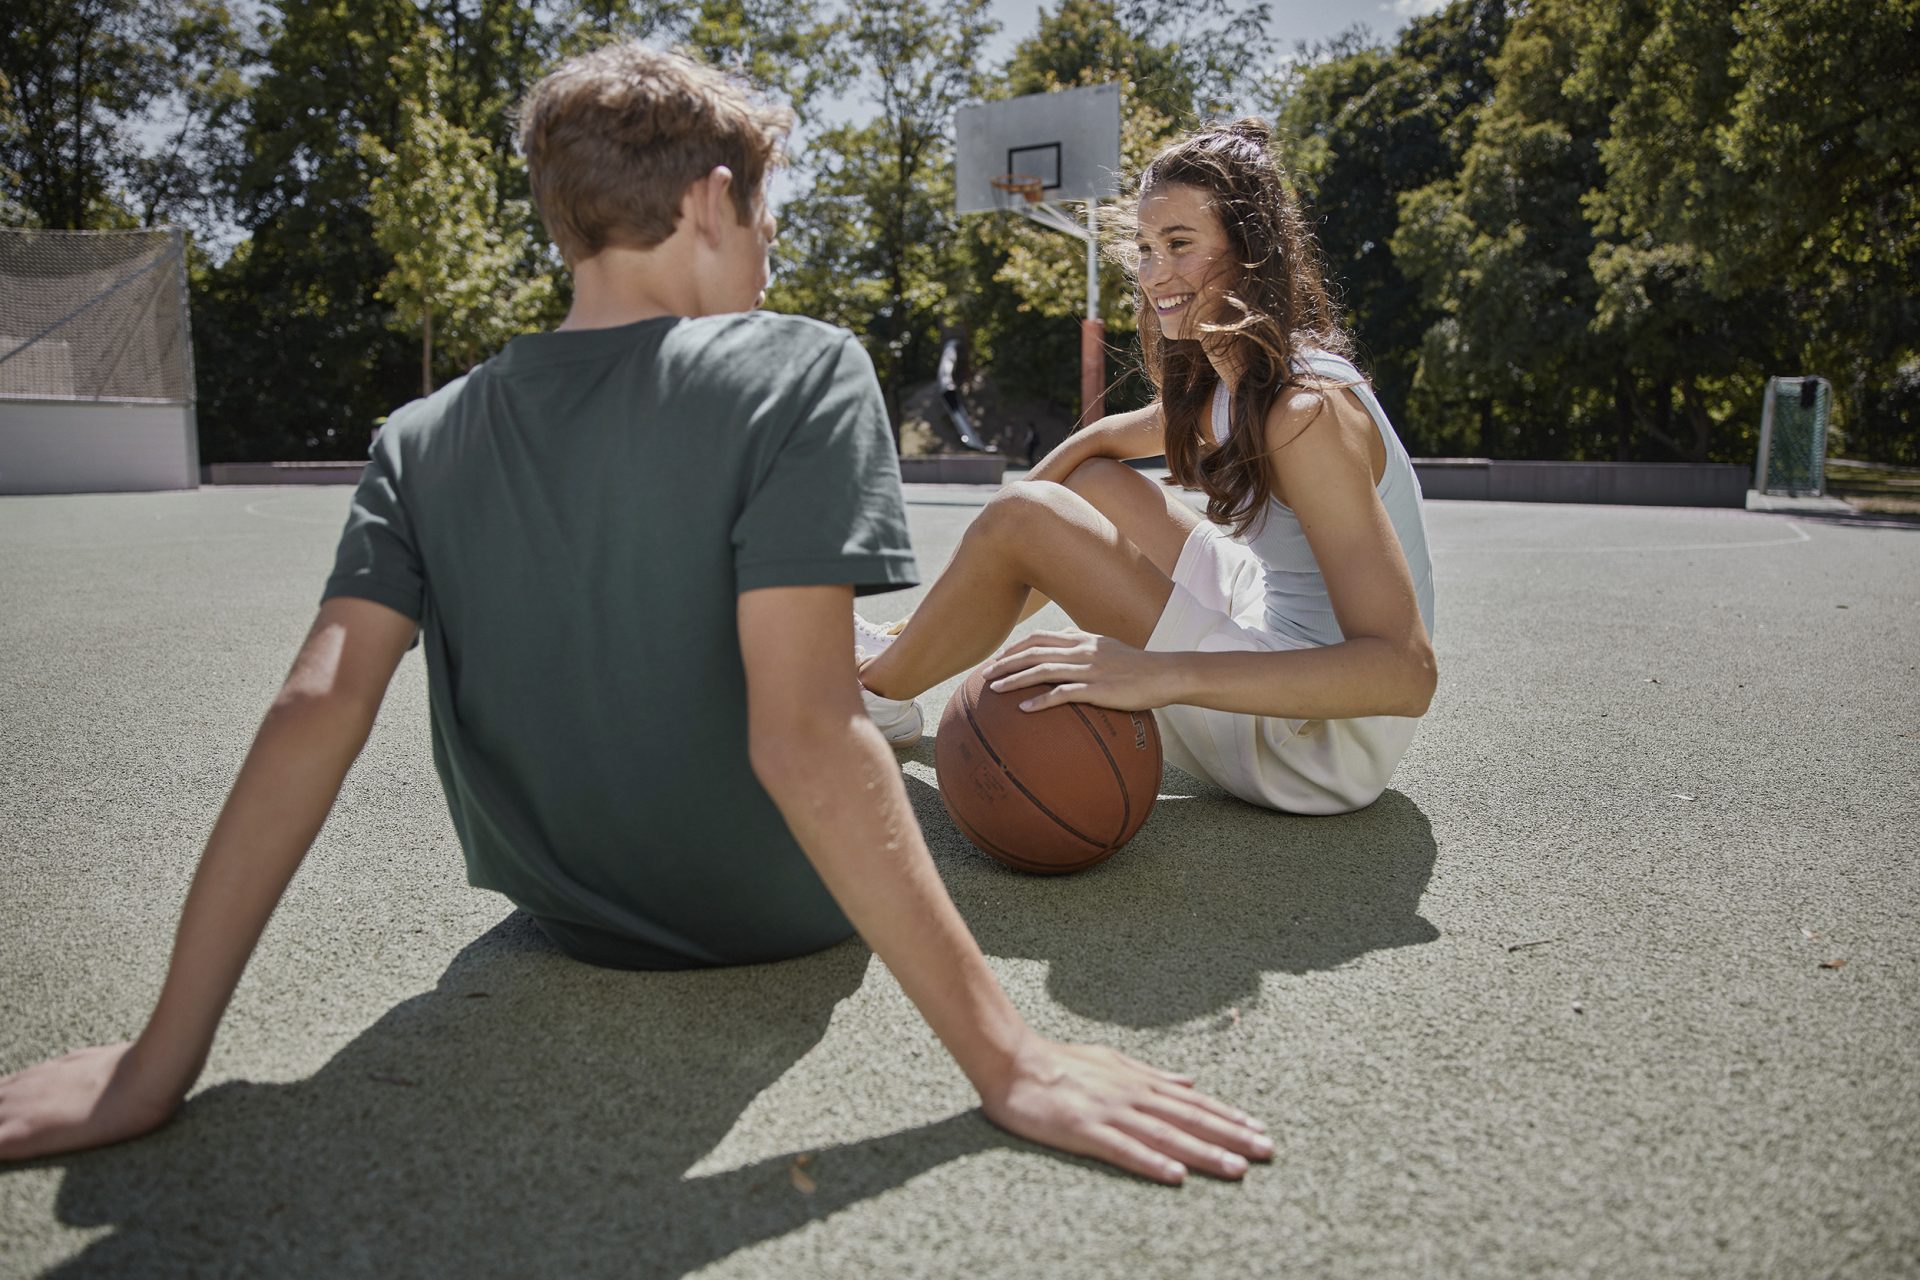 Junge und Mädchen mit Basketball in Nachmittagslicht auf Spielplatz